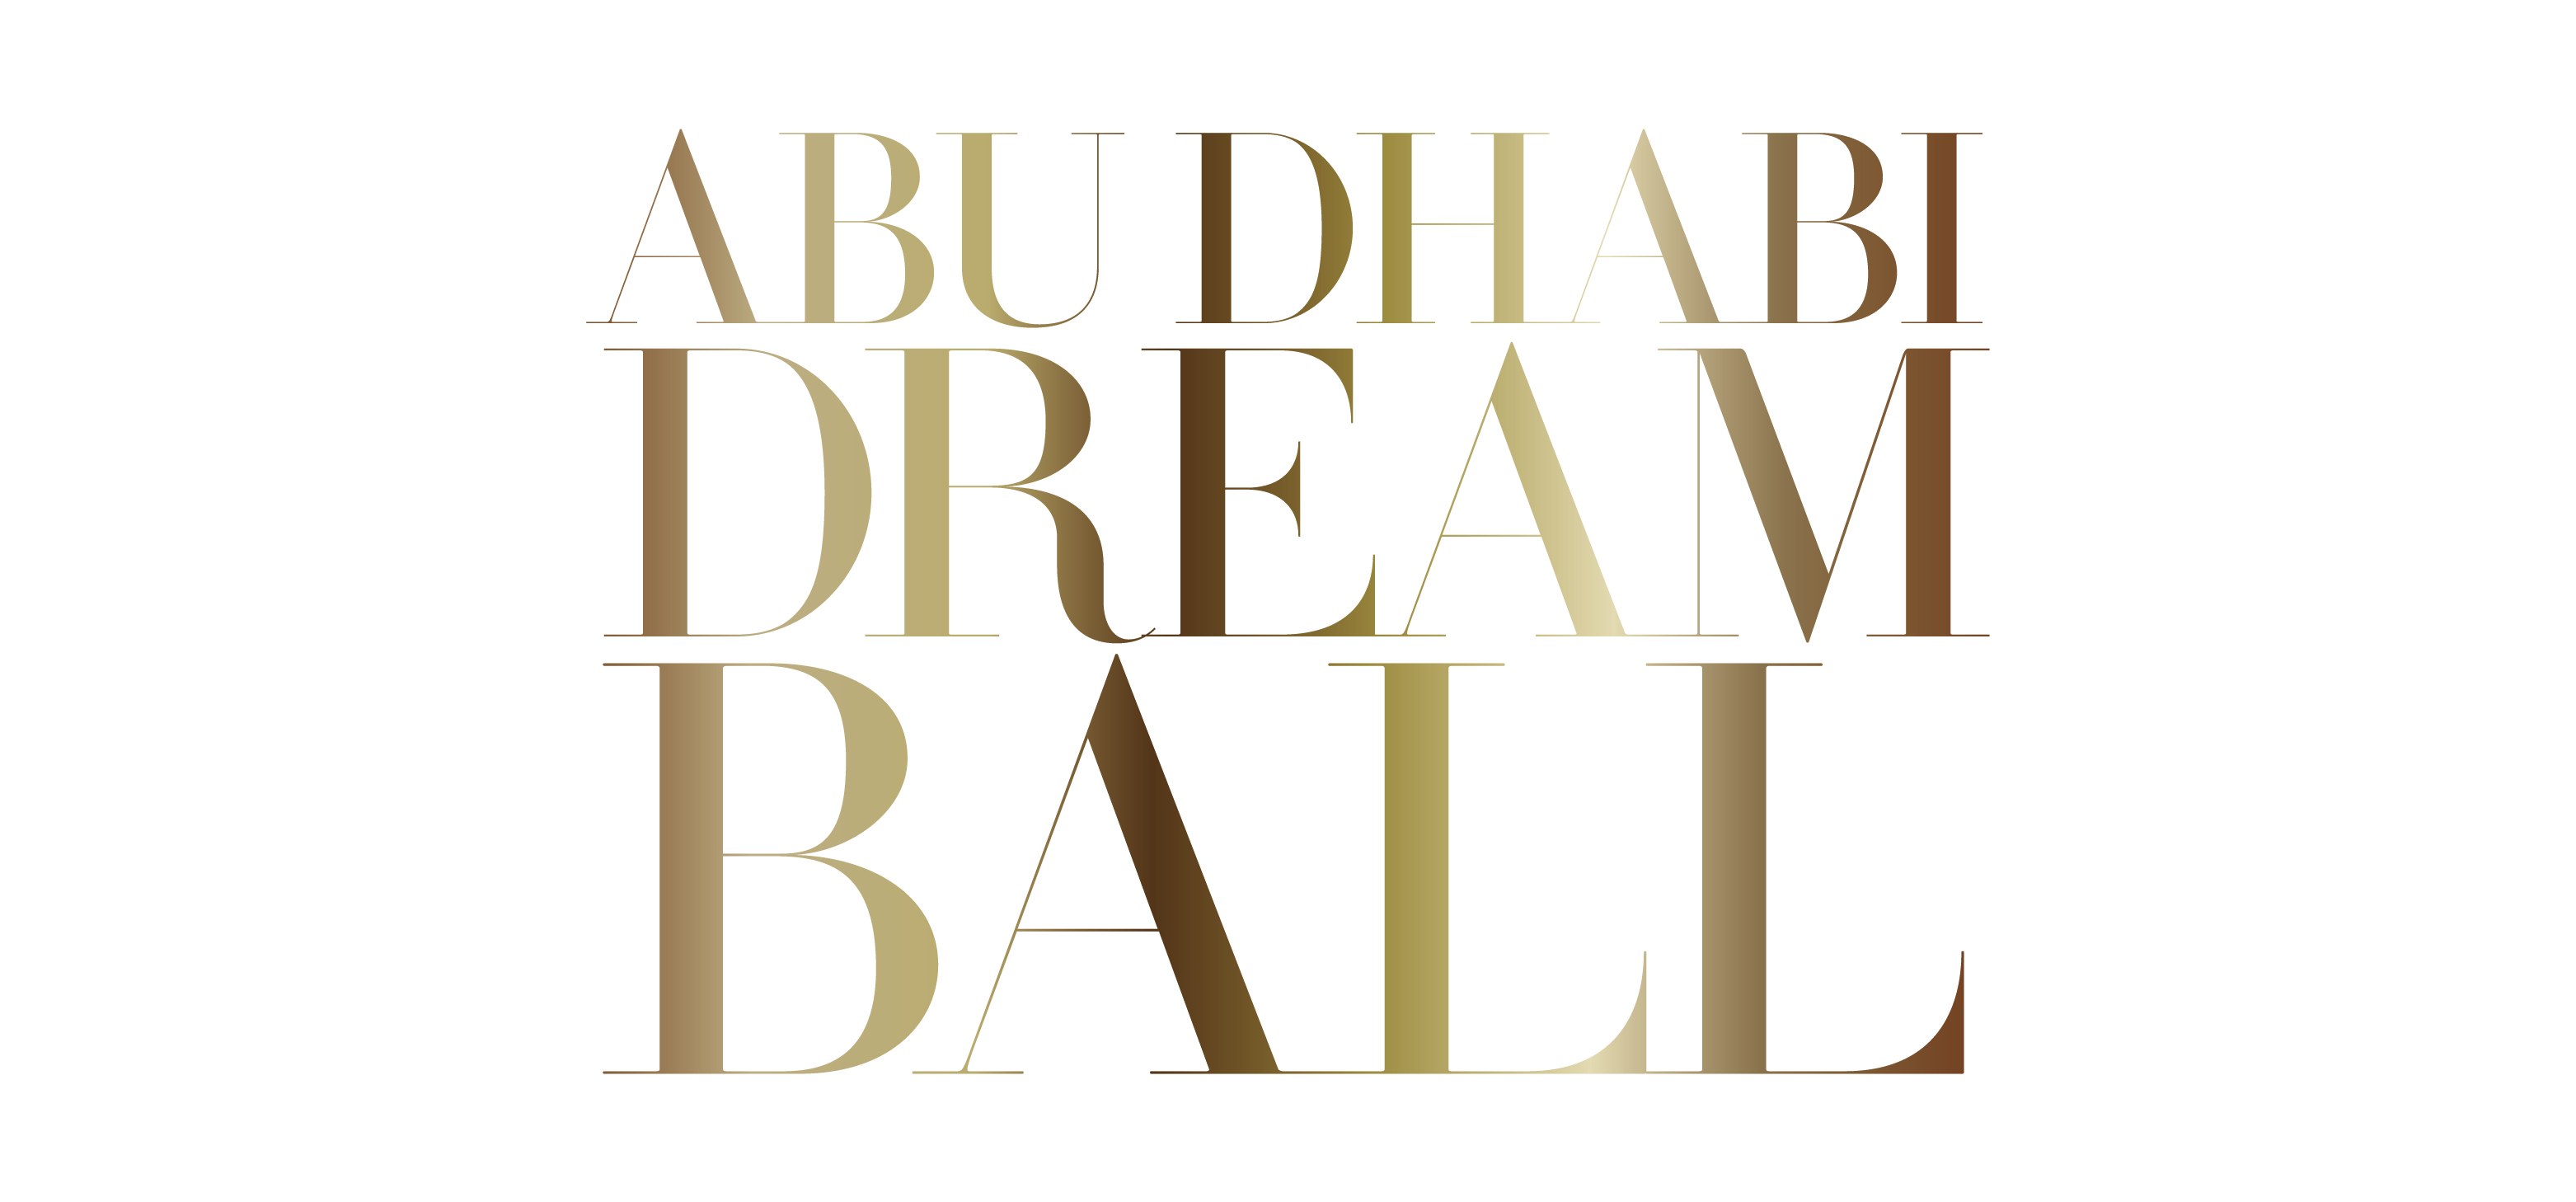 Abu Dhabi Dream Ball